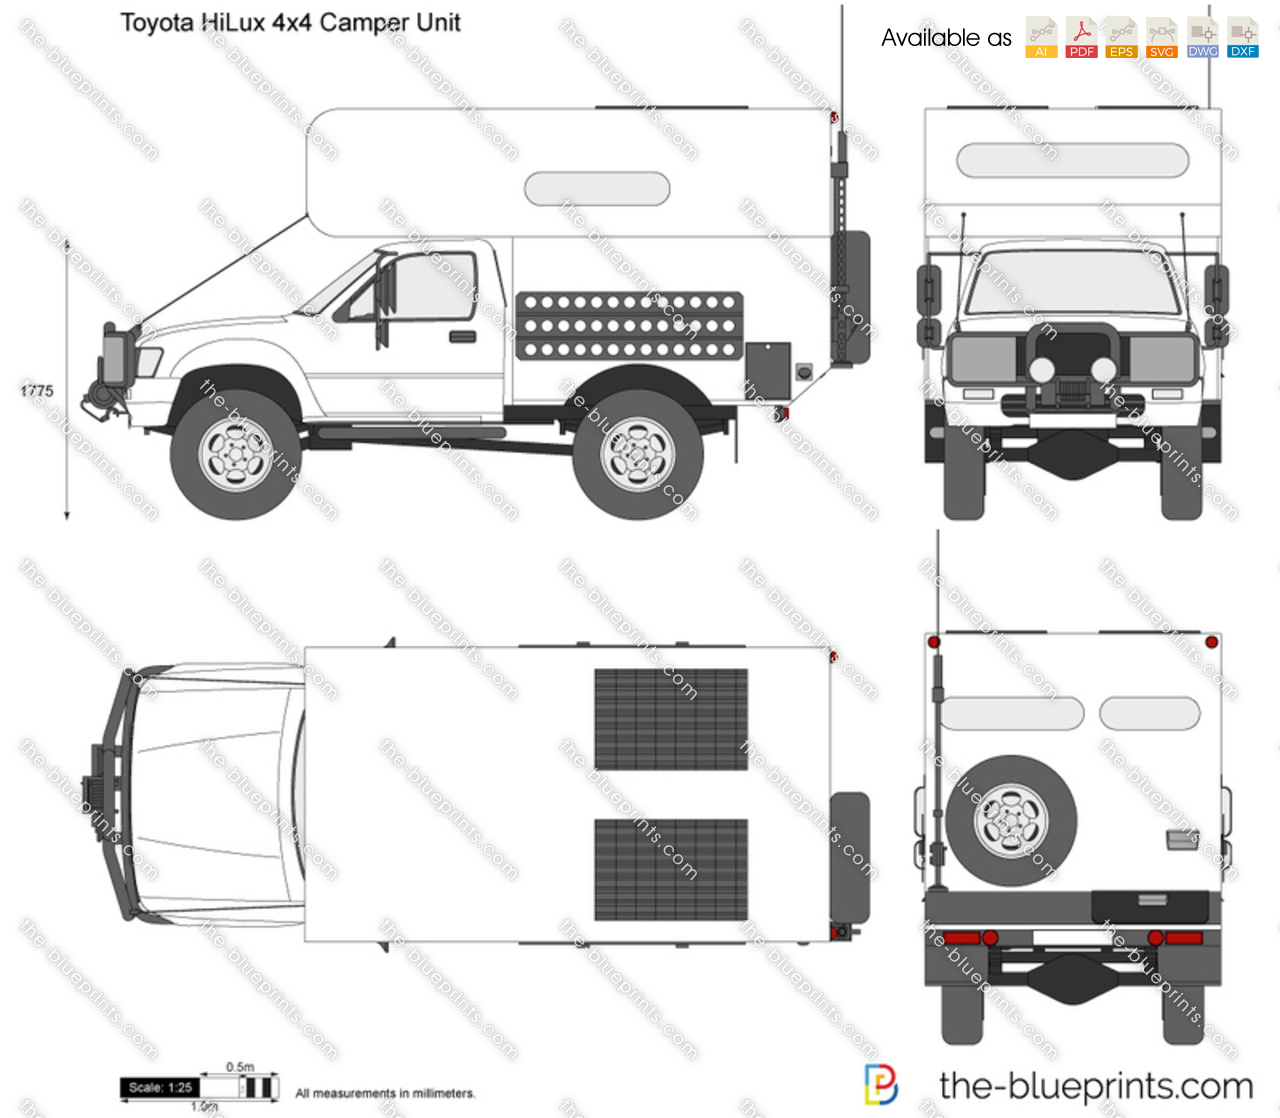 Toyota HiLux 4x4 Camper Unit